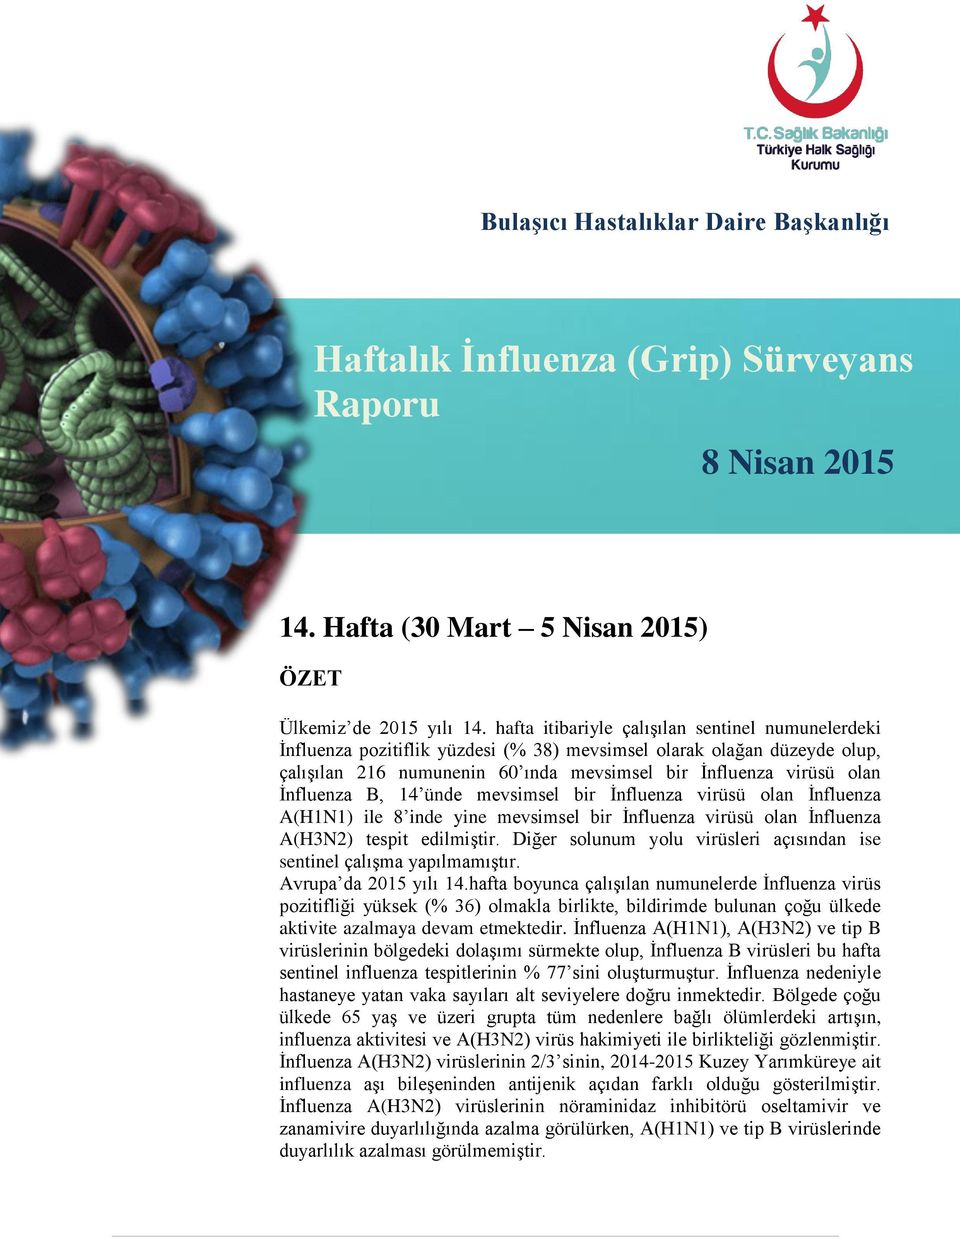 İnfluenza B, 14 ünde mevsimsel bir İnfluenza virüsü olan İnfluenza A(H1N1) ile 8 inde yine mevsimsel bir İnfluenza virüsü olan İnfluenza A(H3N2) tespit edilmiştir.